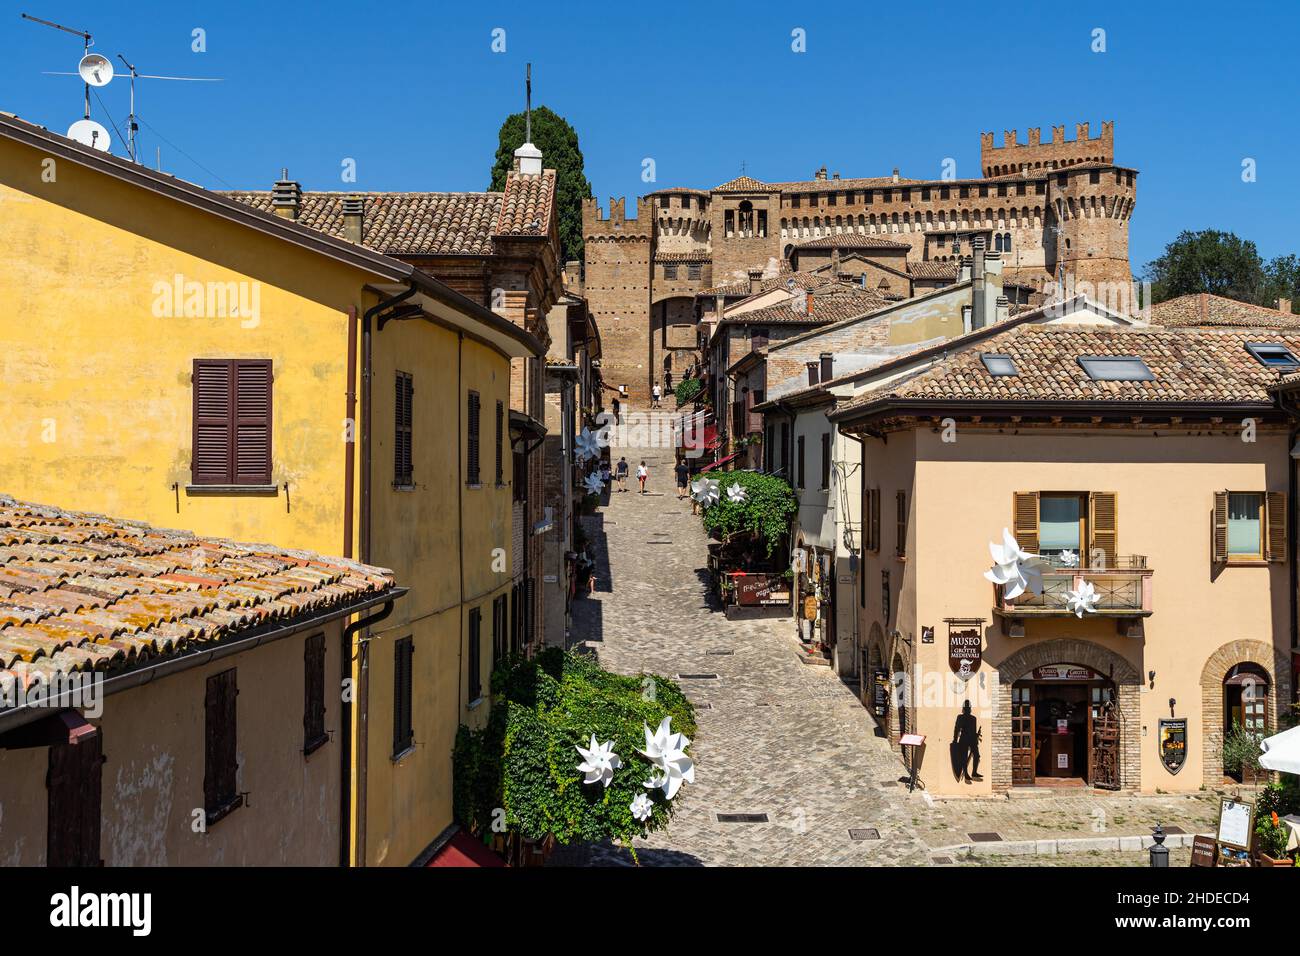 Vue sur Gradara, ville médiévale colorée de la région des Marches et destination touristique populaire, Marche, Italie Banque D'Images